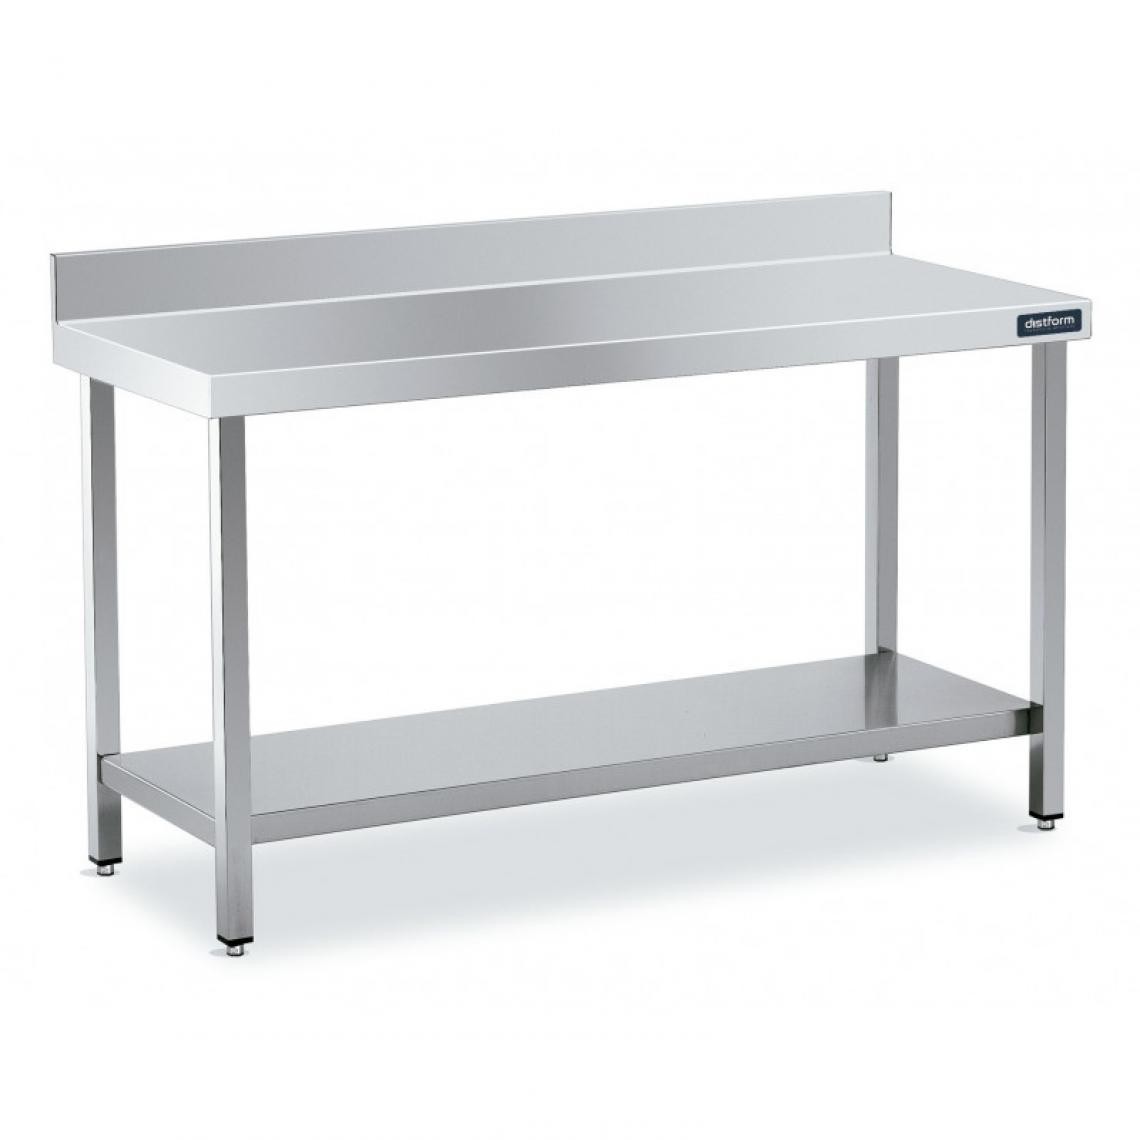 DISTFORM - Table Adossée en Inox avec 1 étagère Profondeur 700 mm - Distform - Acier inoxydable600x700 - Tables à manger